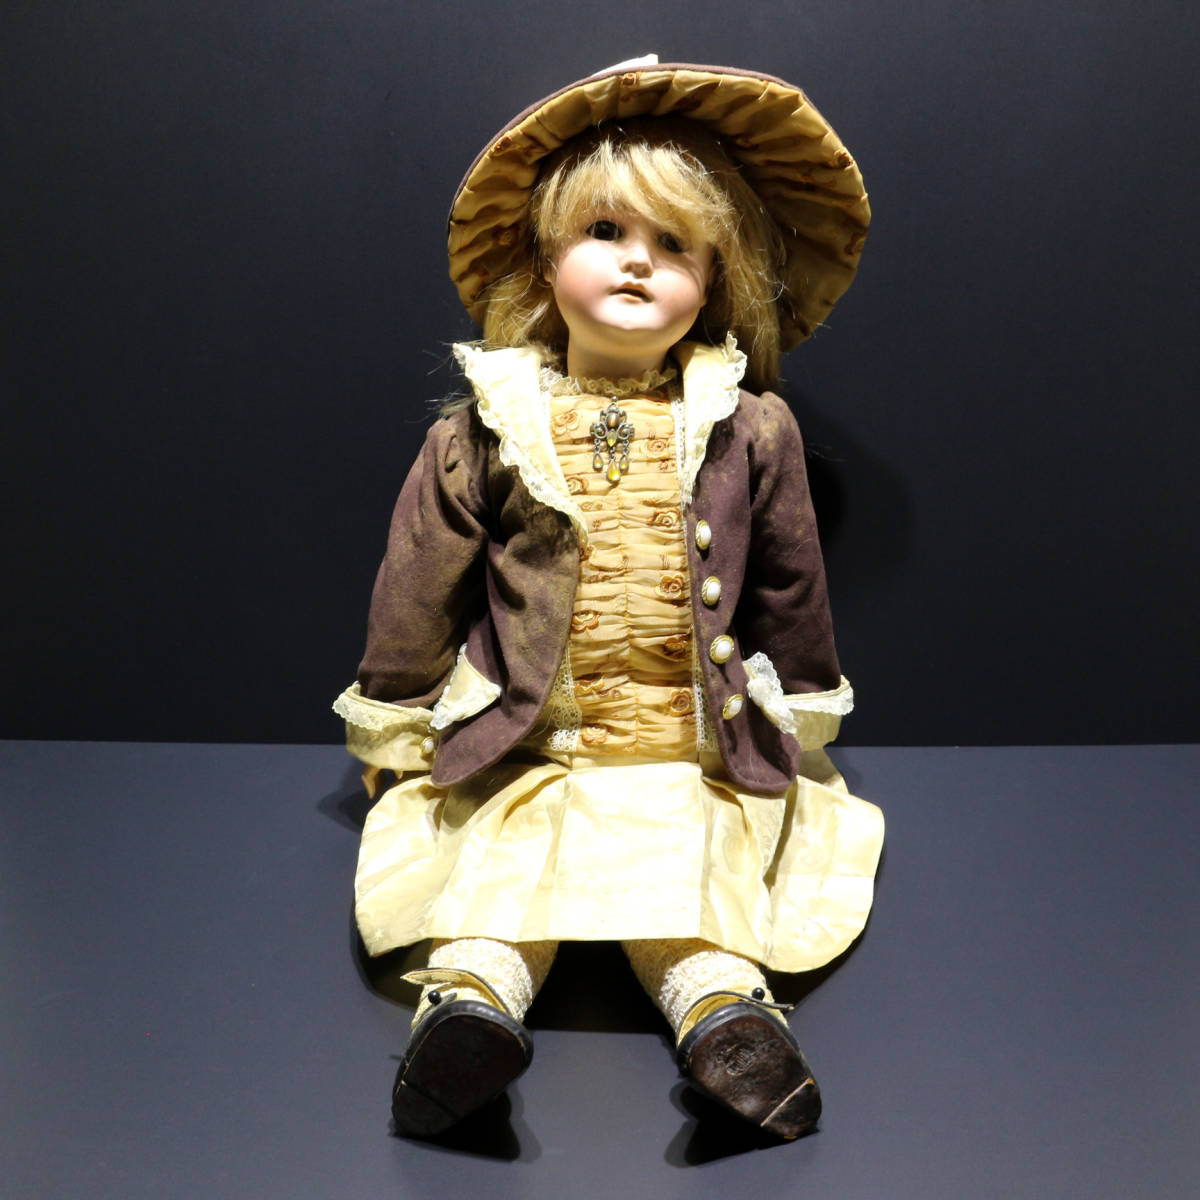 ヴィンテージ / ビスクドール / ドイツ製 / global dolls製 ウィッグ / 女の子 / ドール / 人形 / ヘッドマーク有り